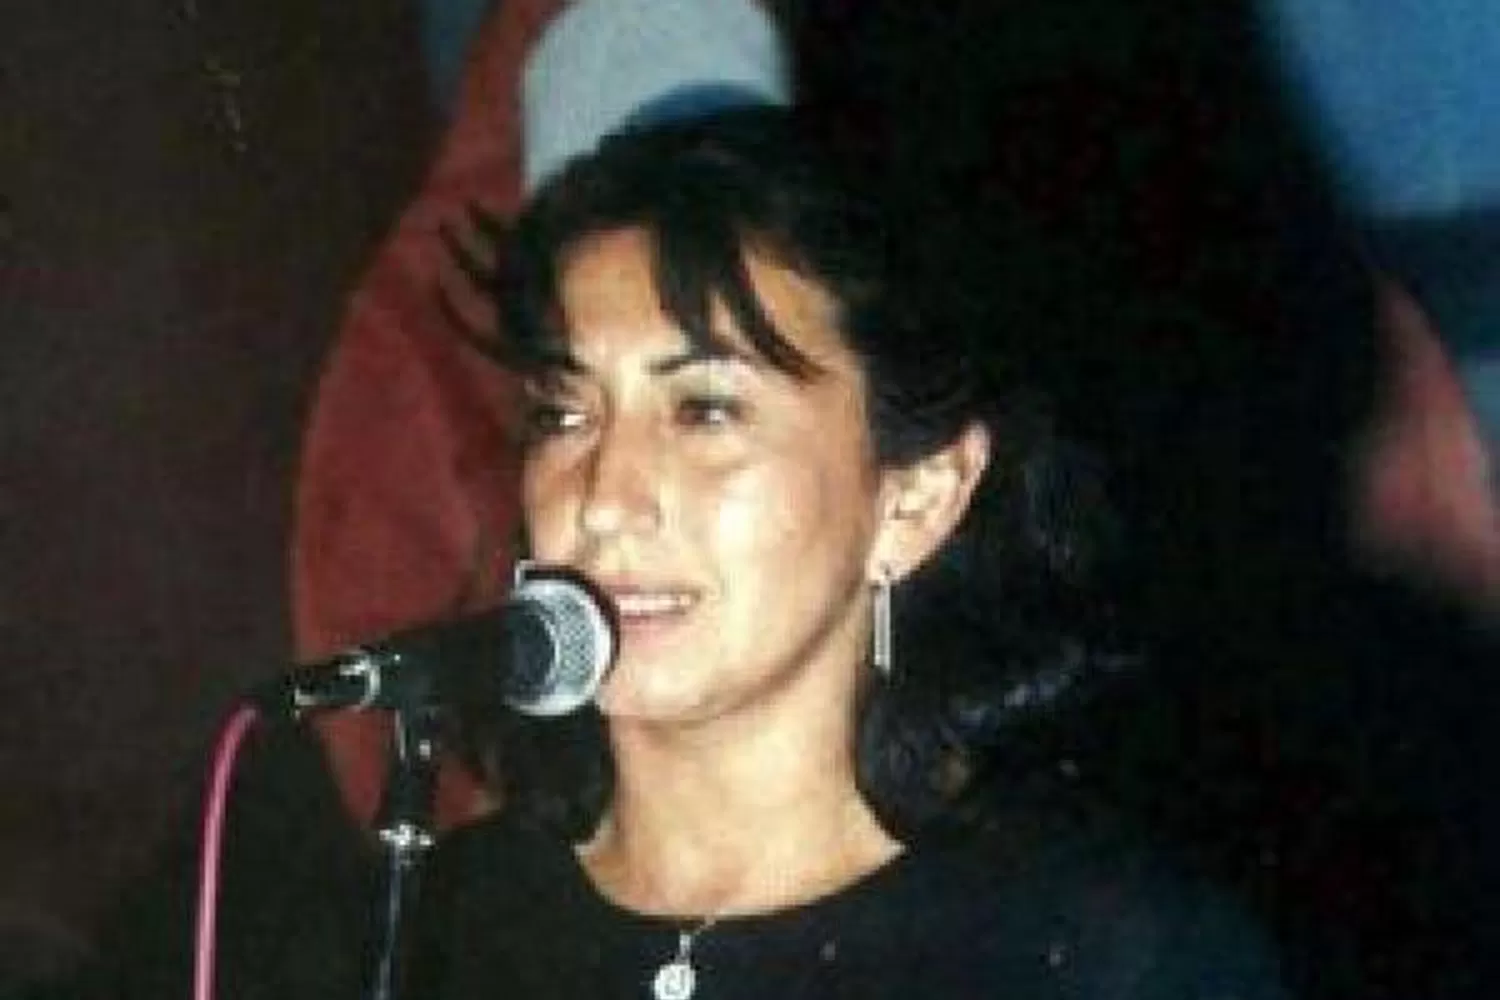 VÍCTIMA. Ángela Beatriz Argañaraz iba a ser nombrada directora de escuela cuando la hicieron desaparecer.